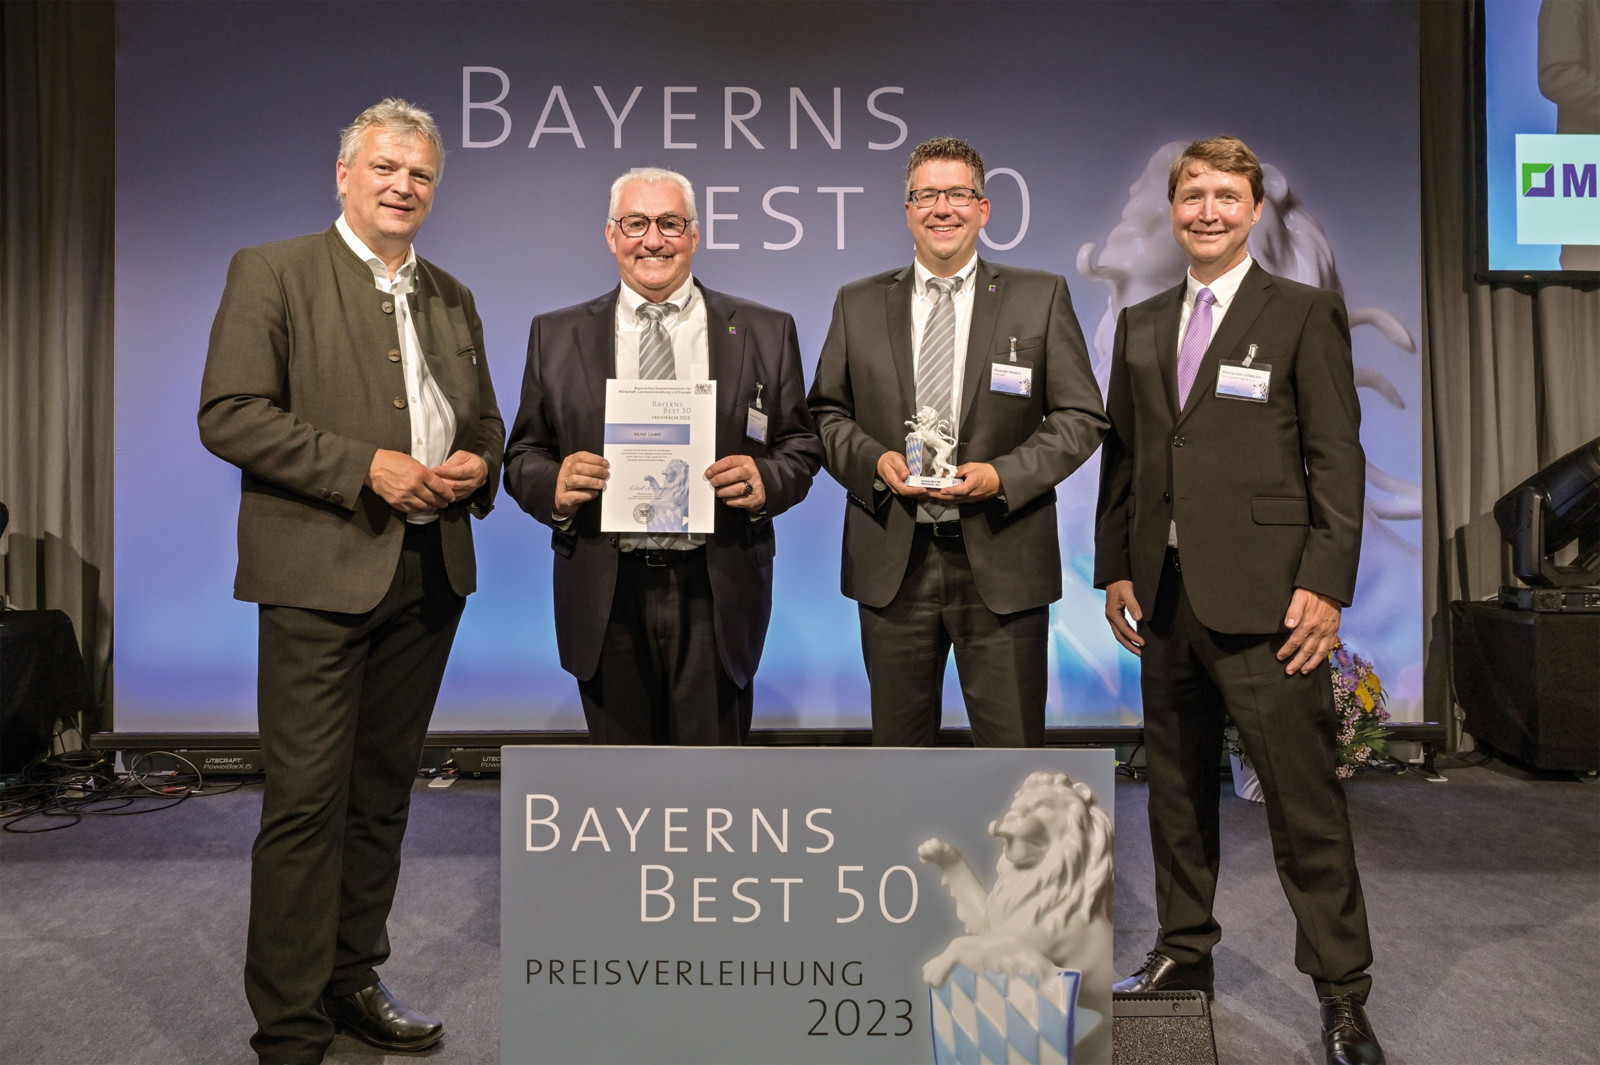 Die Munk Group ist erneut mit dem Preis Bayerns Best 50 ausgezeichnet worden (v.l.n.r.): Wirtschaftsstaatssekretär Roland Weigert, Ferdinand Munk, Munk Group, Alexander Werdich, Munk Group, Marcus von Goldacker als Vertreter der Jury. 